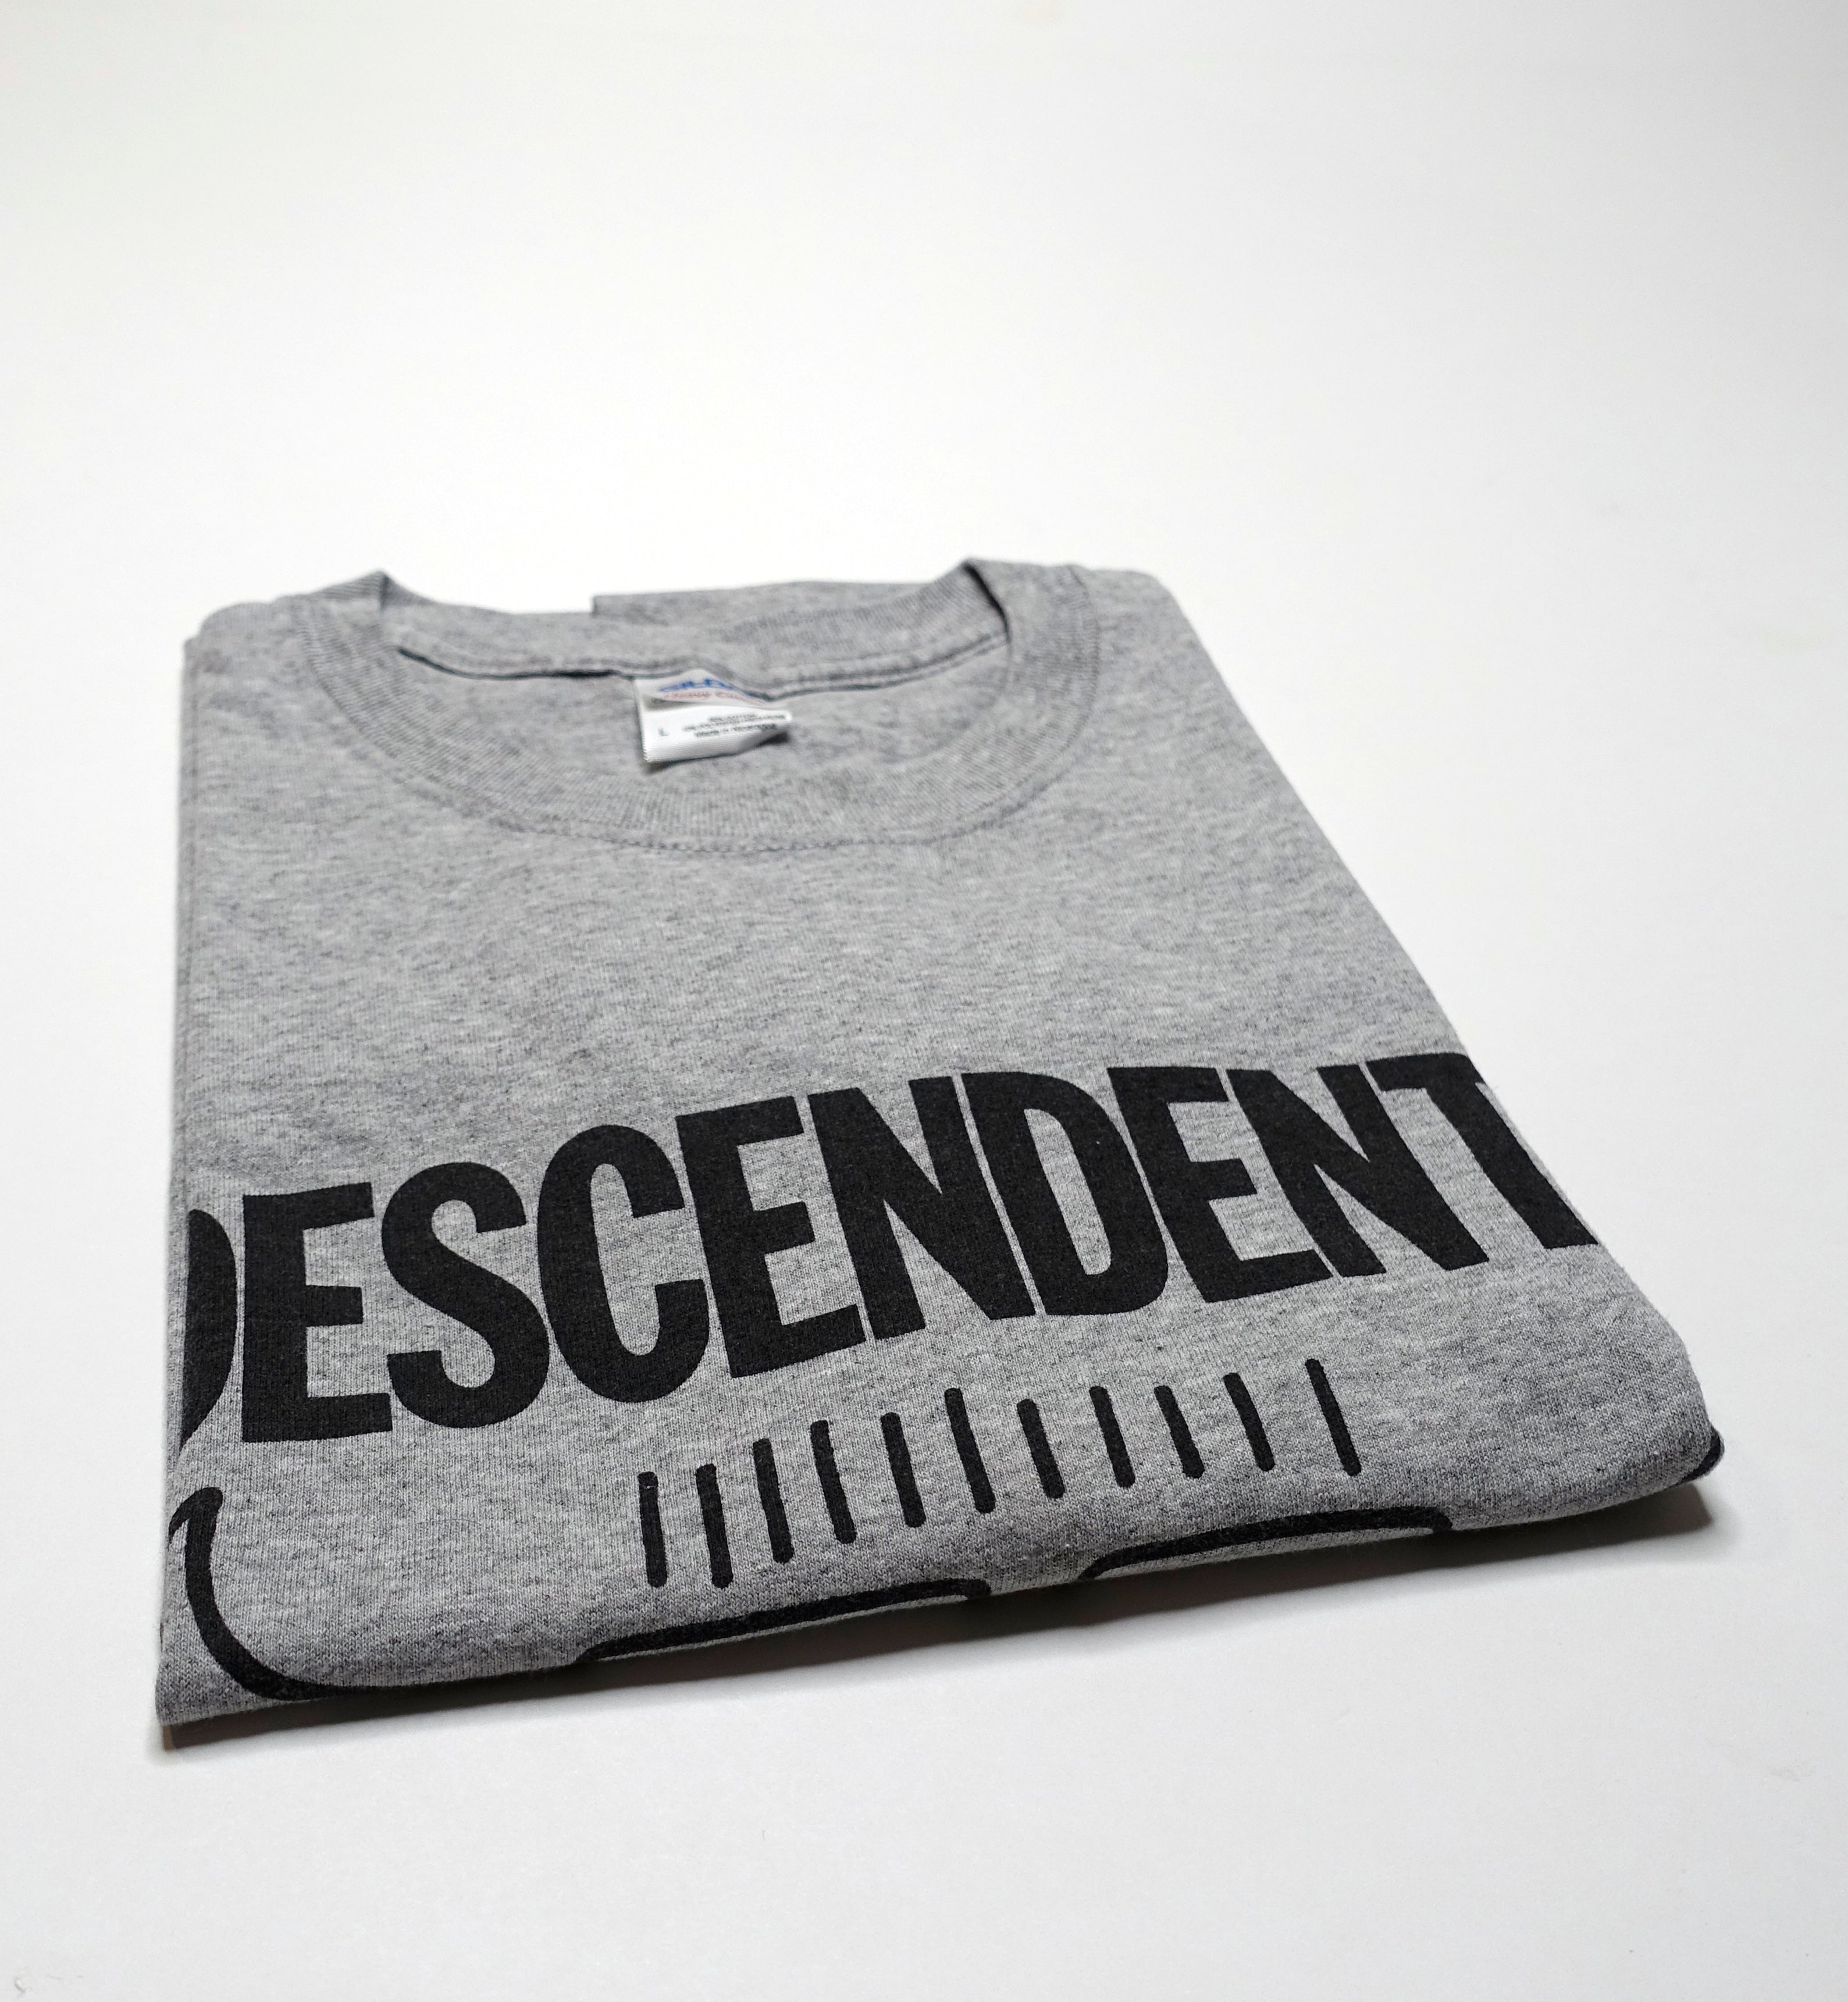 Descendents - FPSF Houston 2012 Tour Shirt Size Large